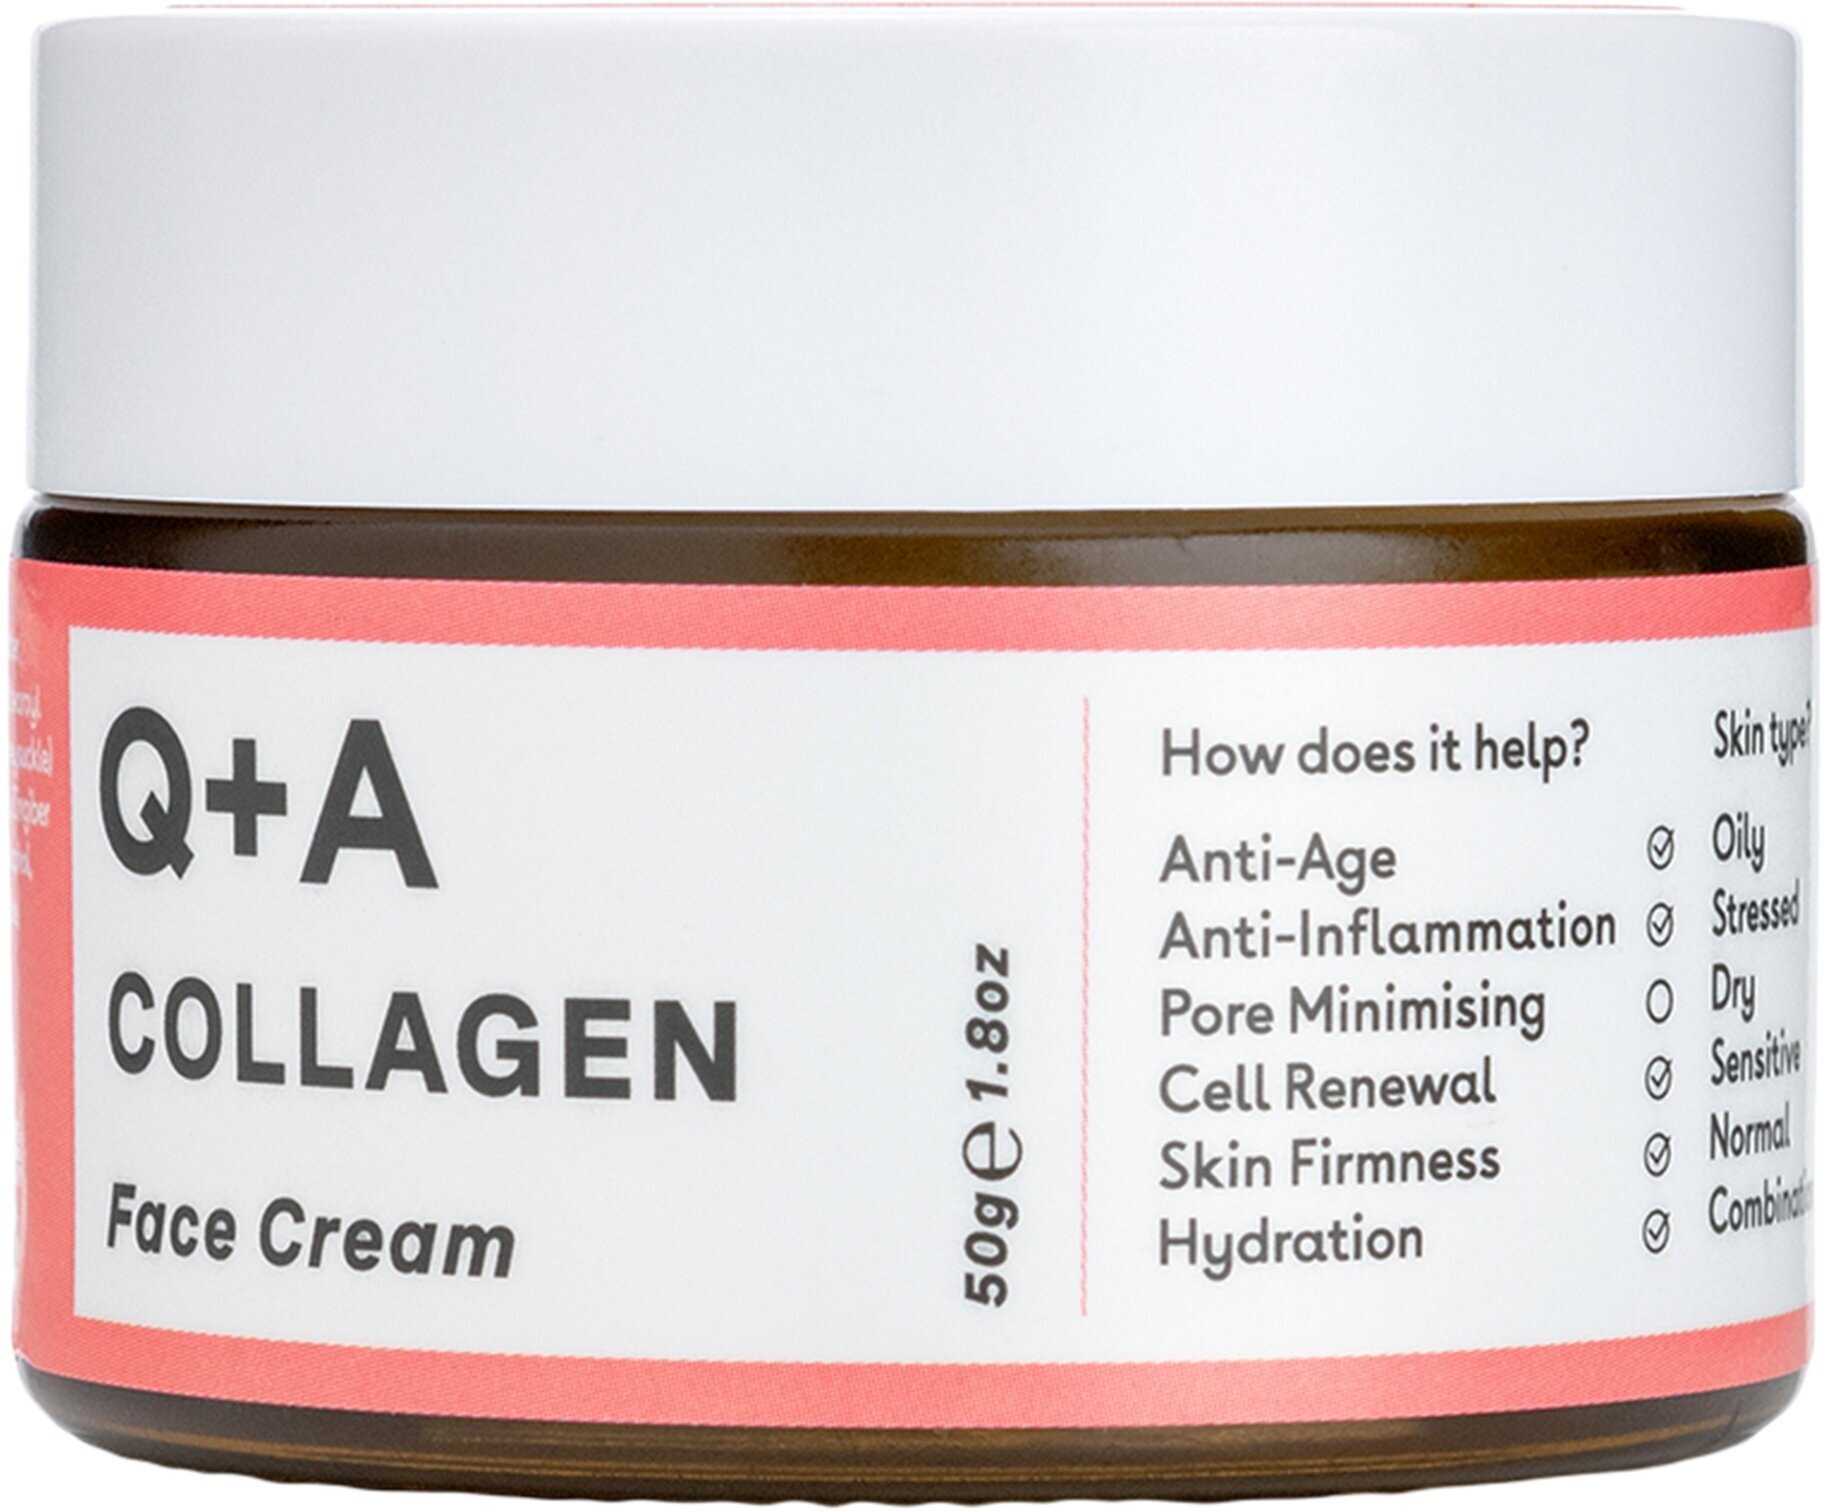 Q+A Антивозрастной крем для лица Collagen 50 гр